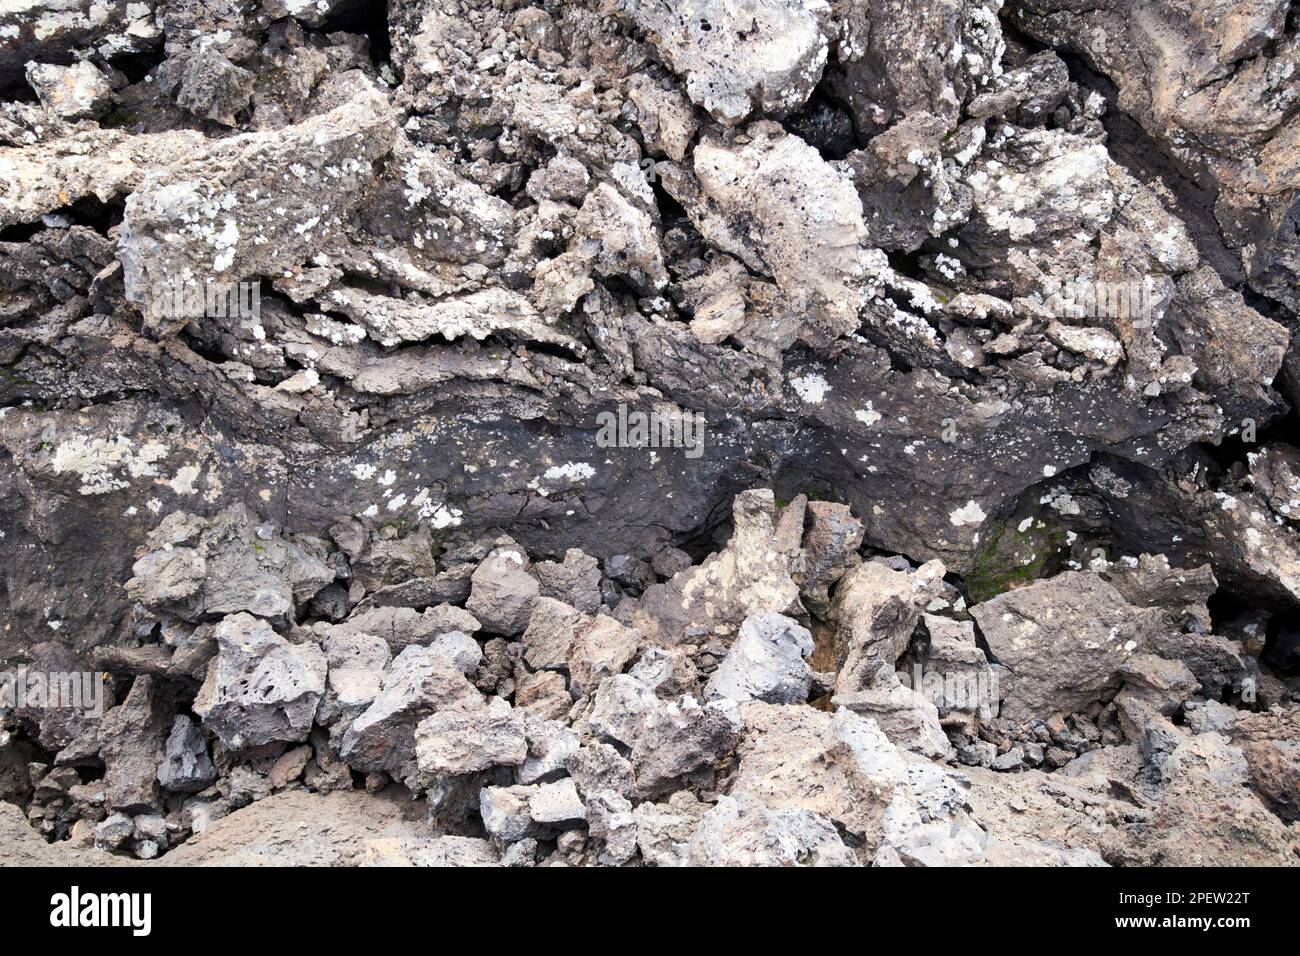 Joints de refroidissement et formations rocheuses dans le flux de lave parque nacional de timanfaya Lanzarote, îles Canaries, Espagne Banque D'Images